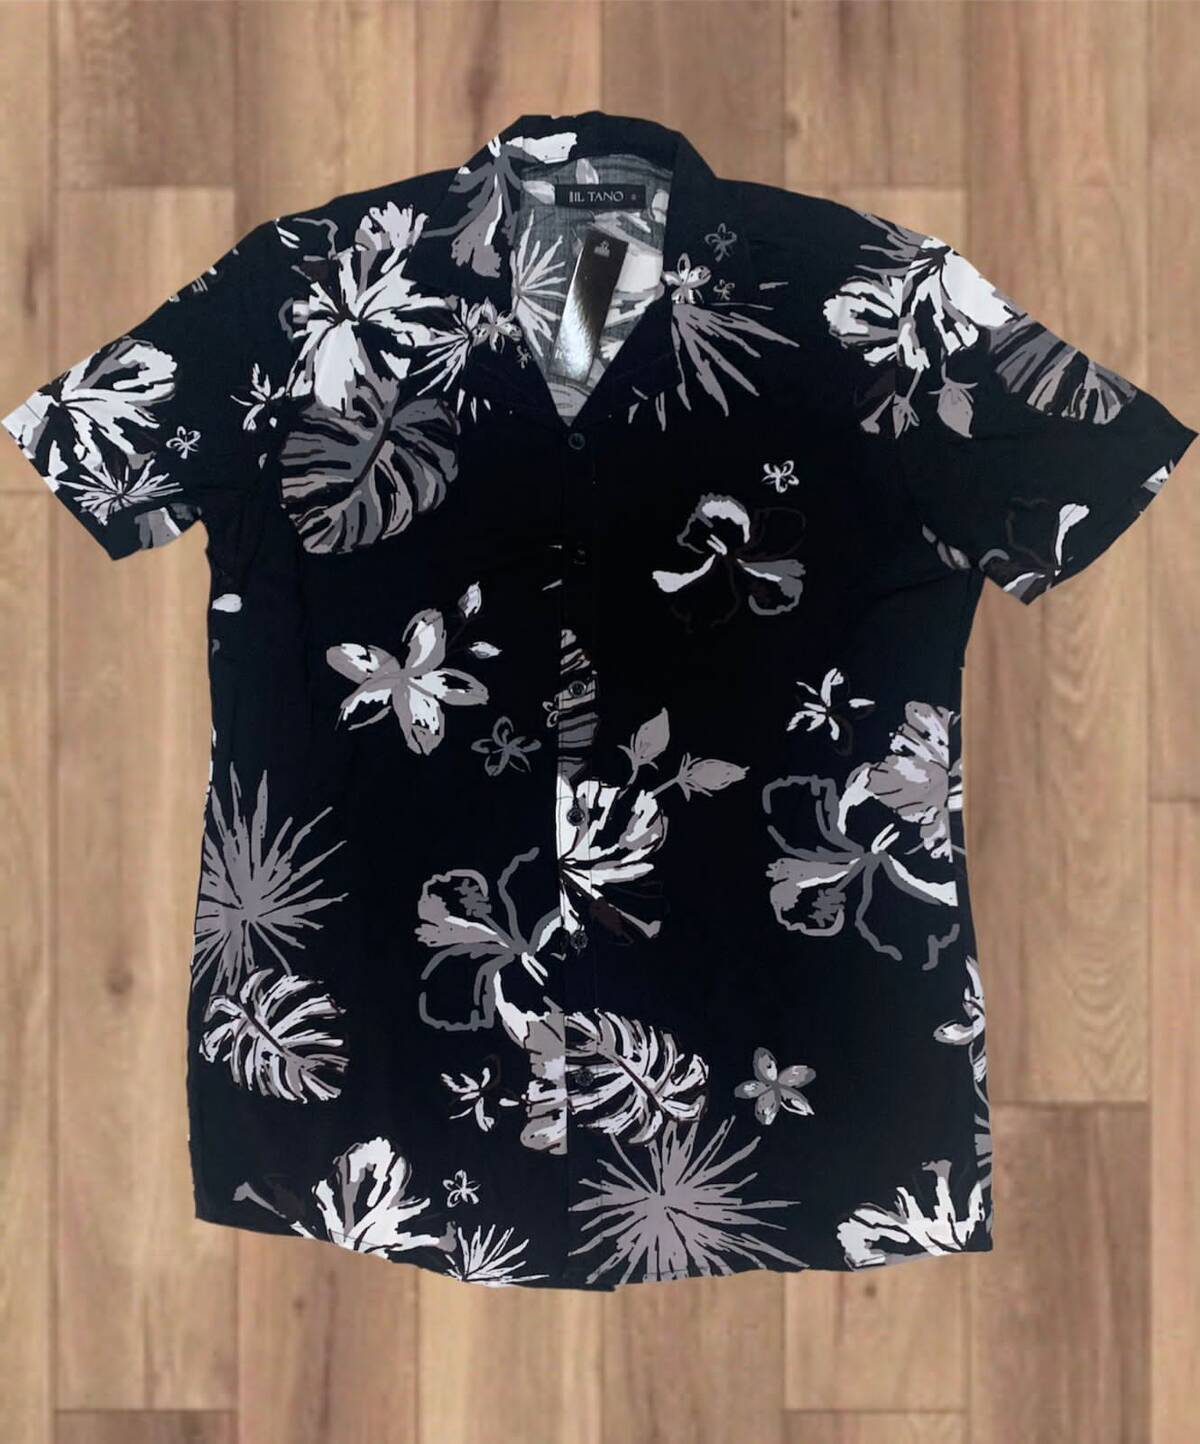 Imagen producto Camisas hawaianas fibrana importada  4